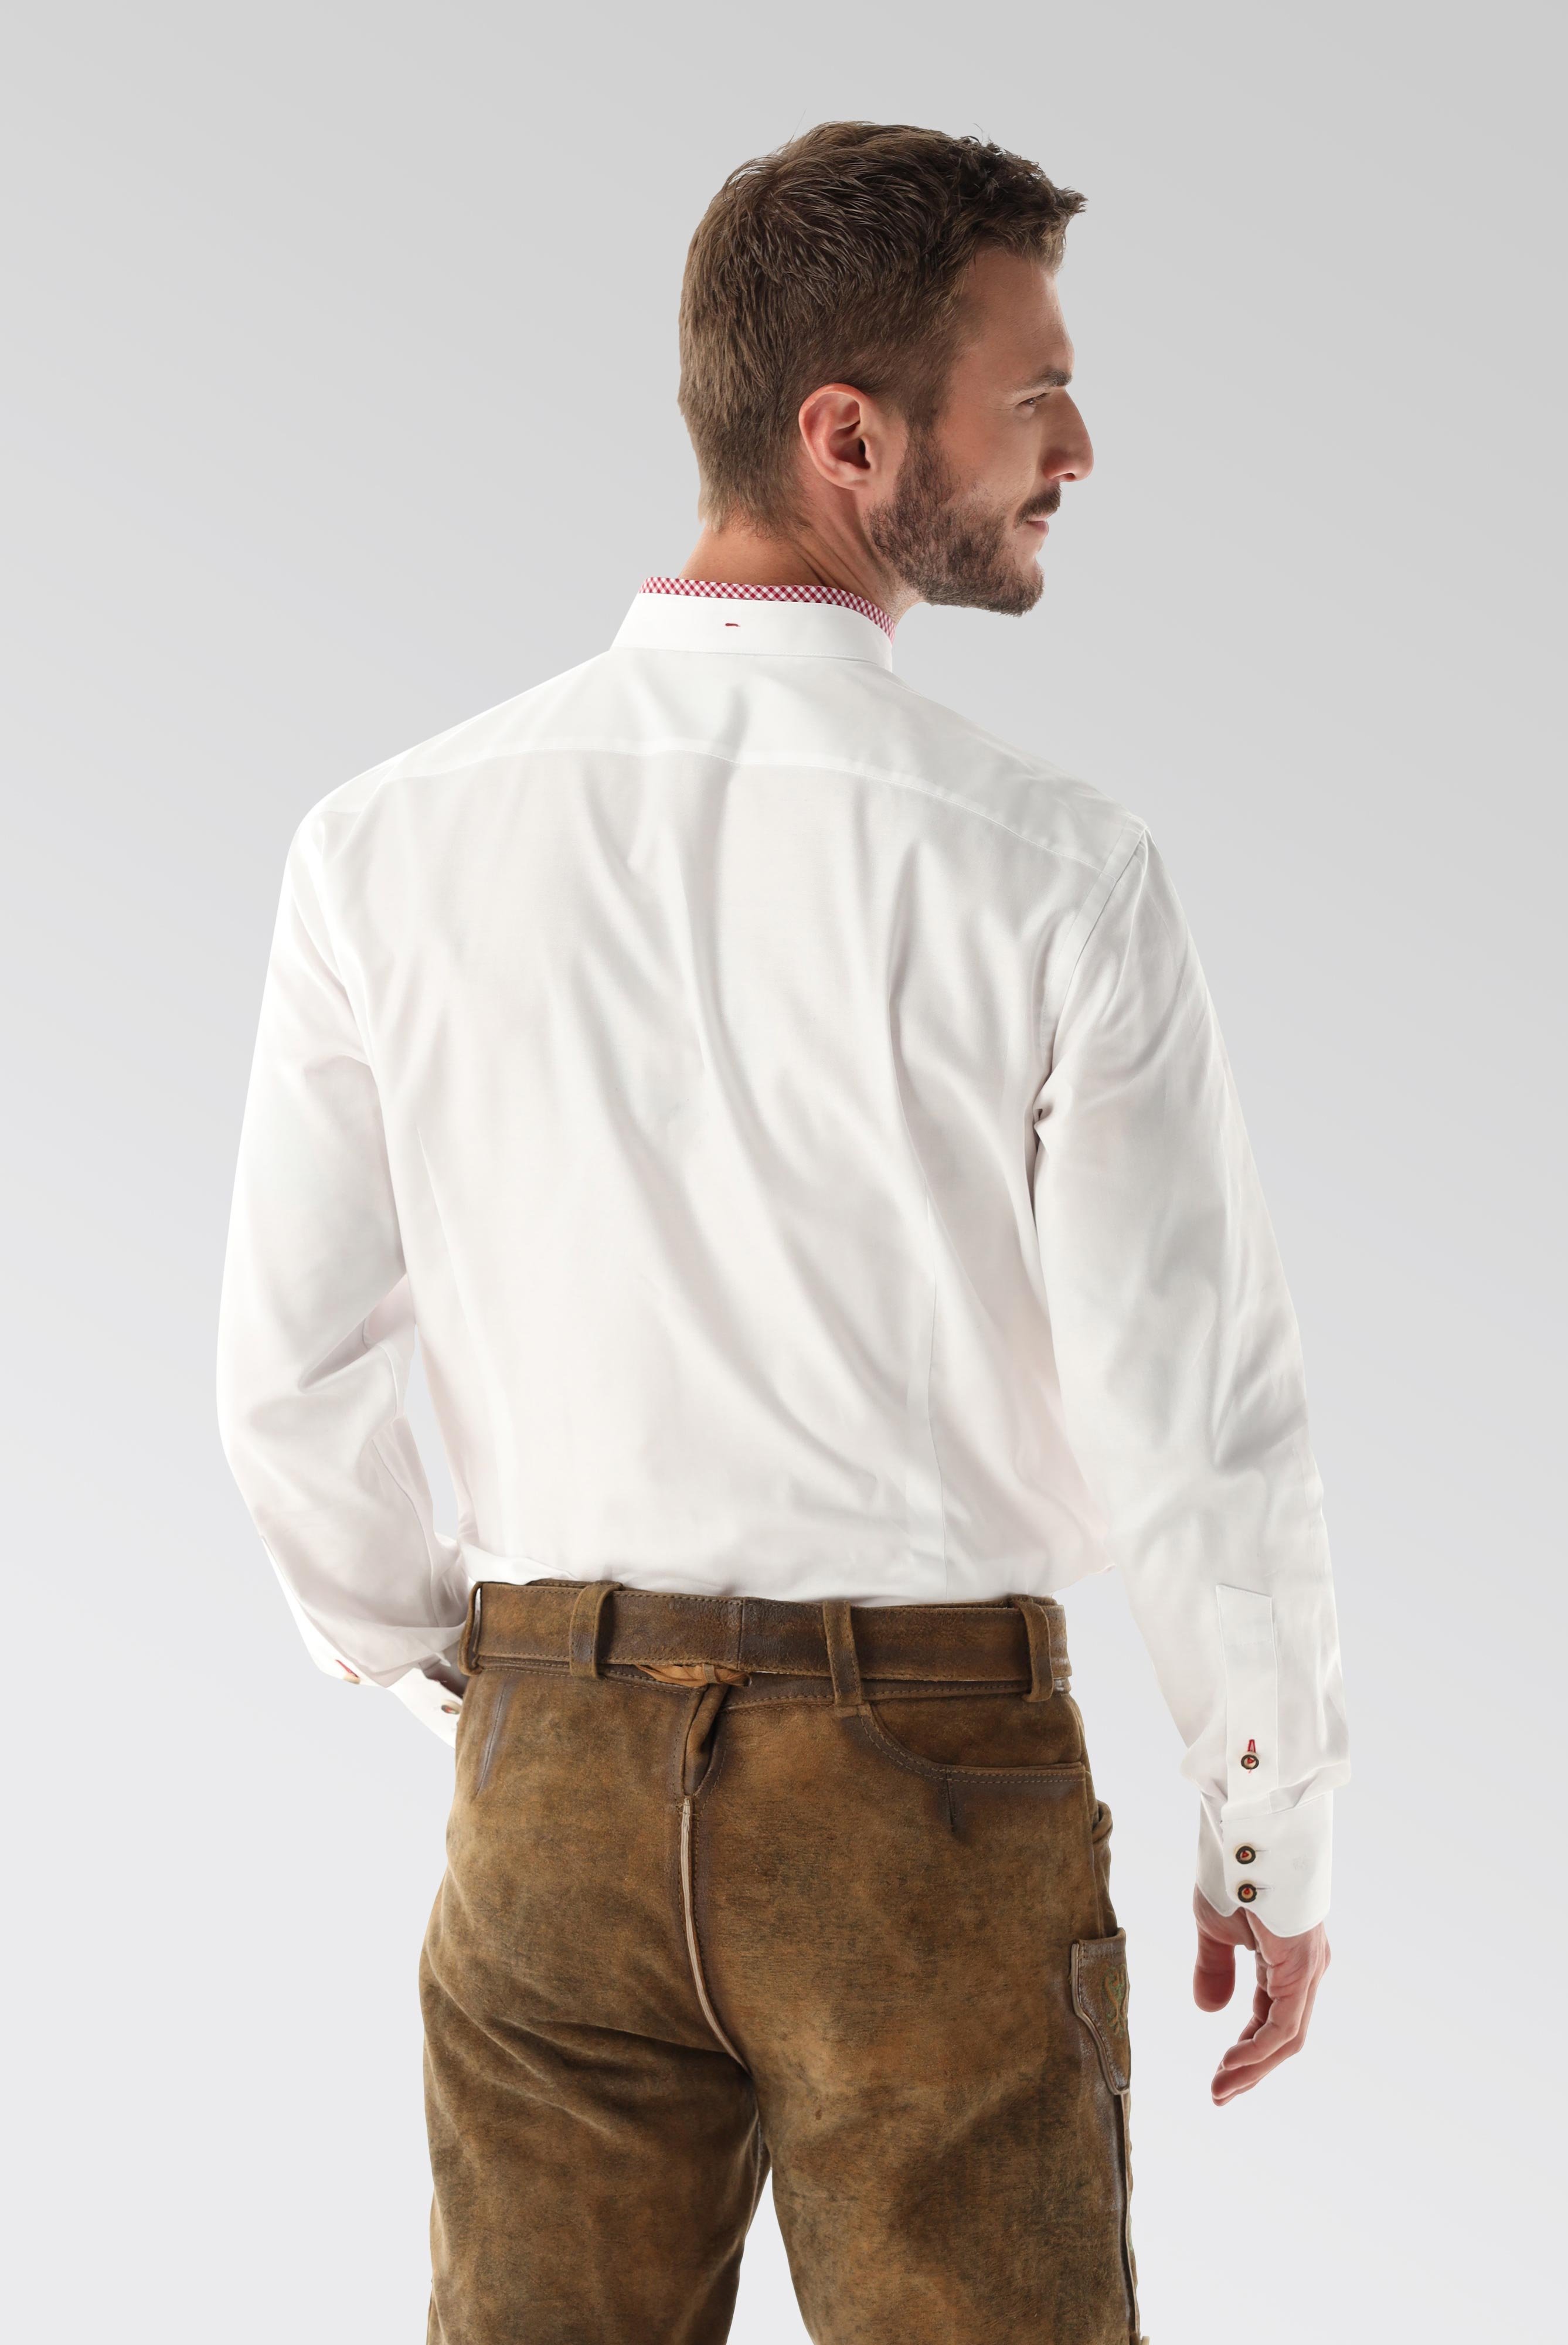 Festliche Hemden+Oxford Trachtenhemd mit Farbdetail Tailor Fit+20.2081.8Q.150251.005.38